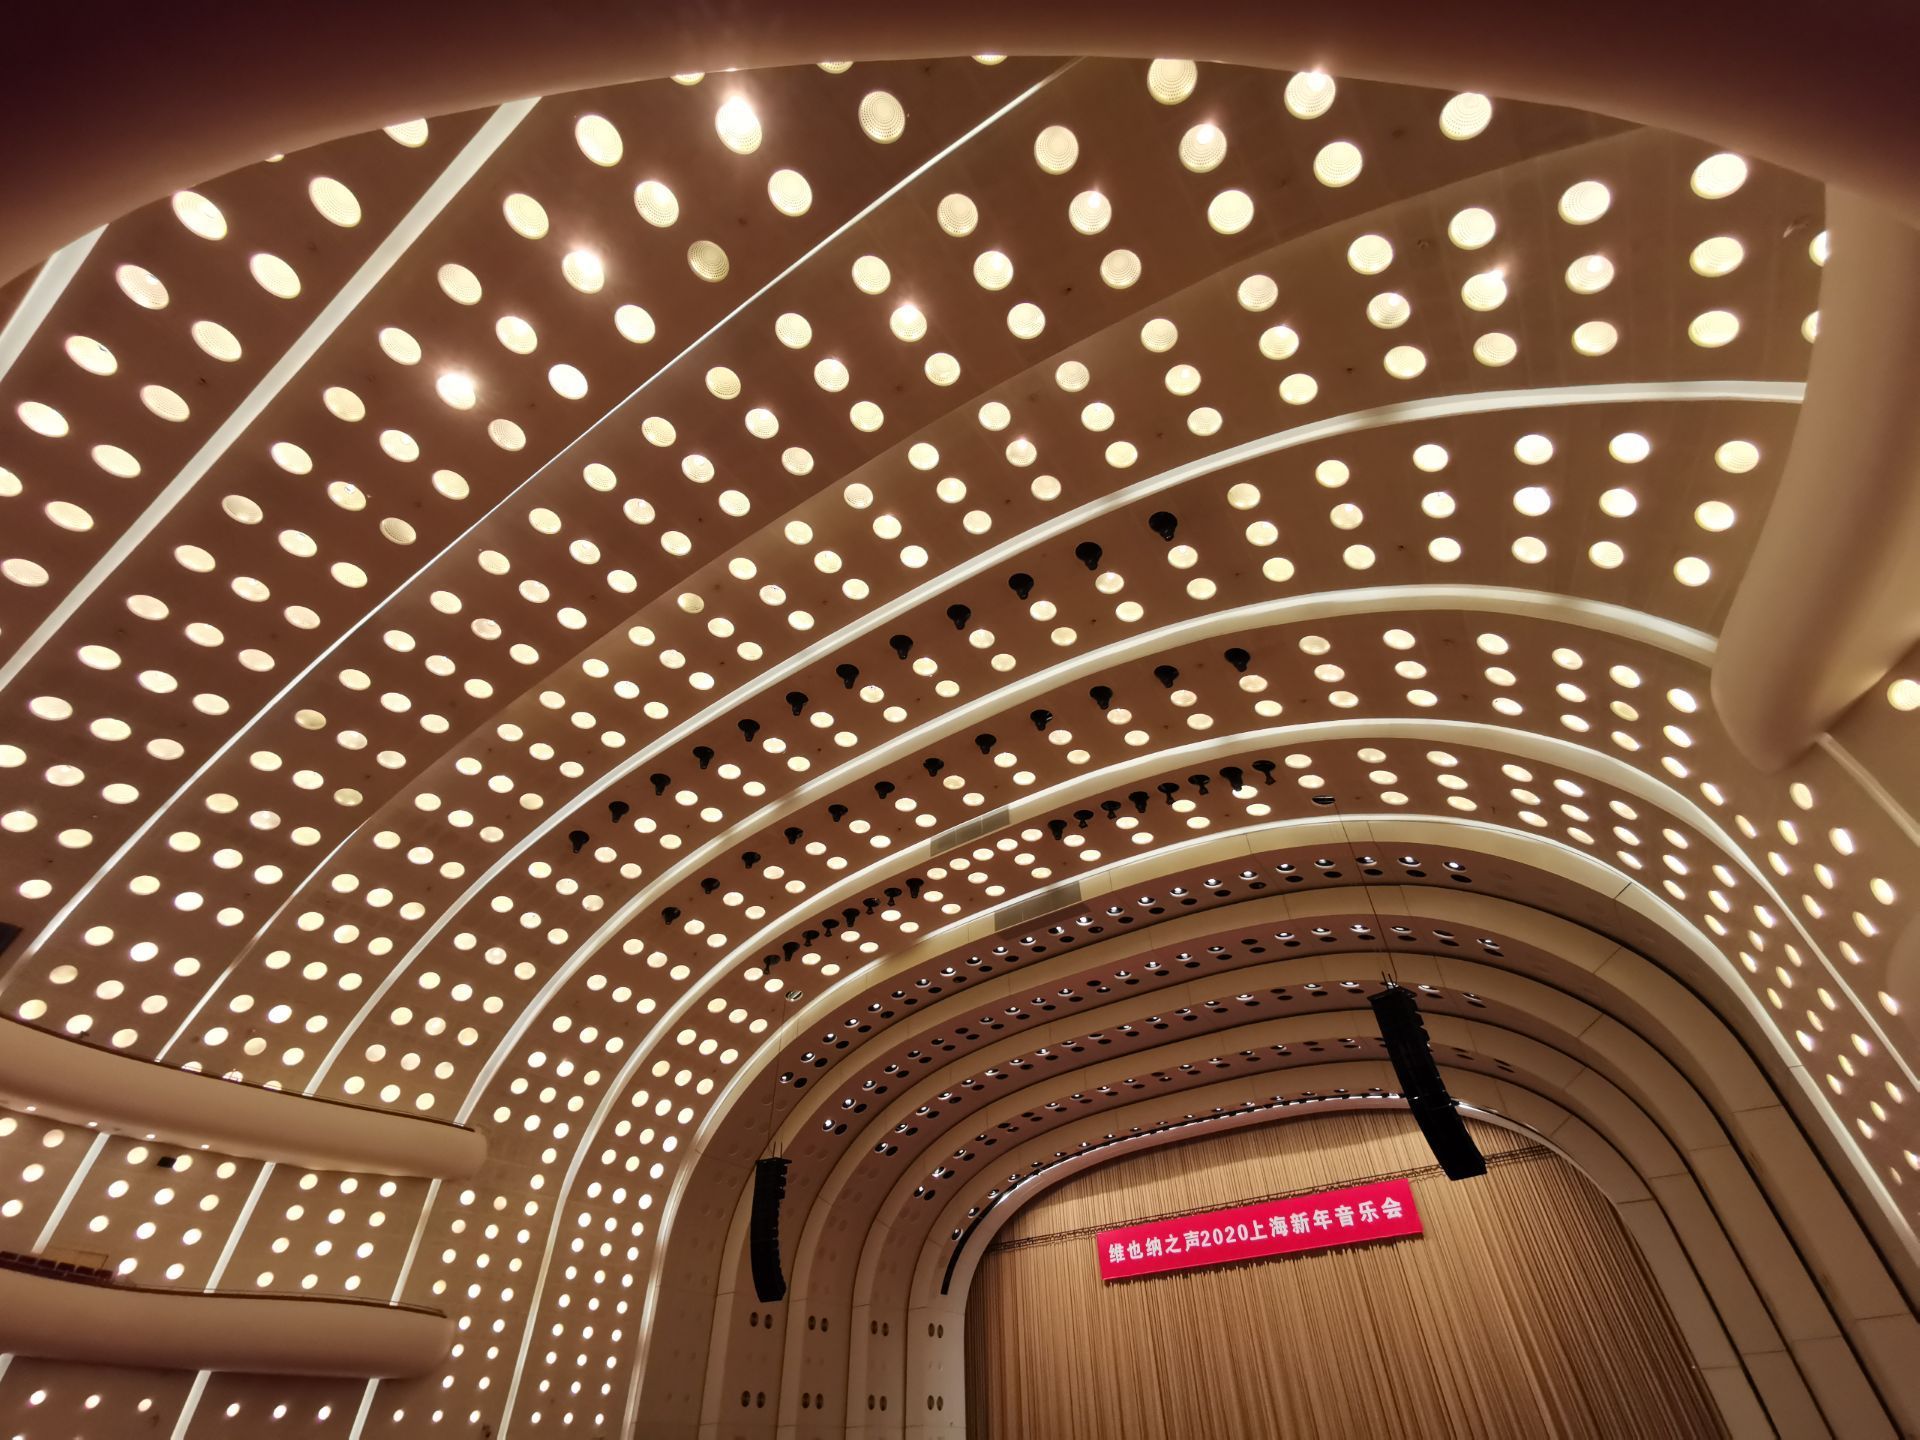 【携程攻略】上海世博会博物馆景点,来世博红厅听维也纳新年音乐会